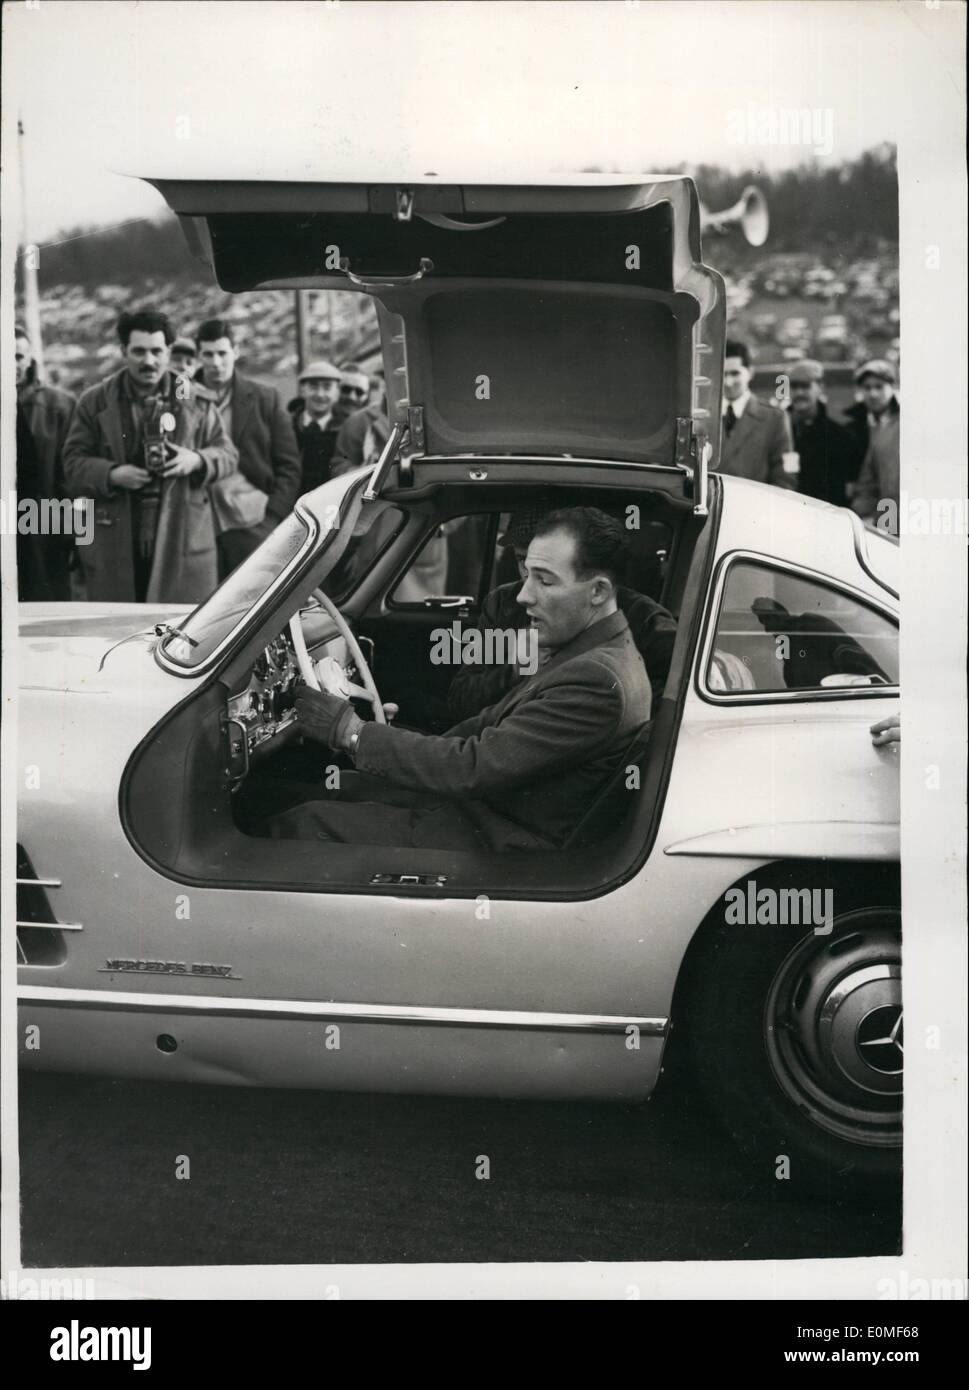 12. Dezember 1954 - Striling Moss fährt den Mercedes Sport Wagen rund um Th Strecke in Brands Hatch: Striling Moos das beliebte britische Auto Rennfahrer - zeigte aus den neuen Mercedes Sportwagen - wenn er es rund um die Strecke - während das Boxing Day Car Race Meeting in Brands Hatch heute fuhr. Foto zeigt Stirling Moss in der neuen Mercedes Sportwagen - zeigt die gefederte Haube des neuen Auto - Marke Luke heute sitzen. Stockfoto